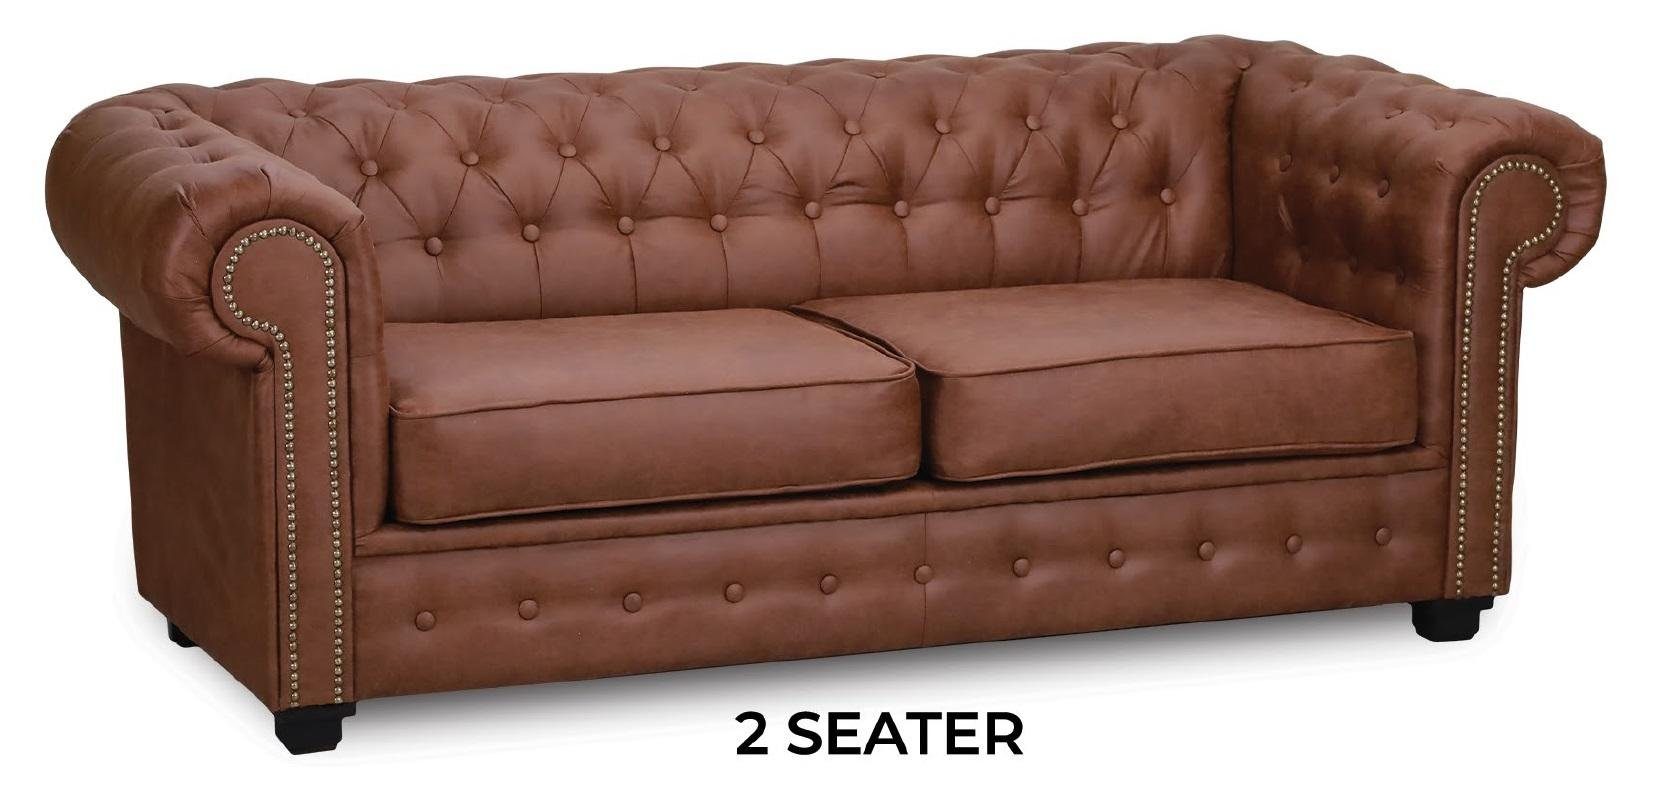 JVmoebel Sofa in Möbel Polster Couchen Sofas, Europe Chesterfield Zweisitzer Couch Made Braune